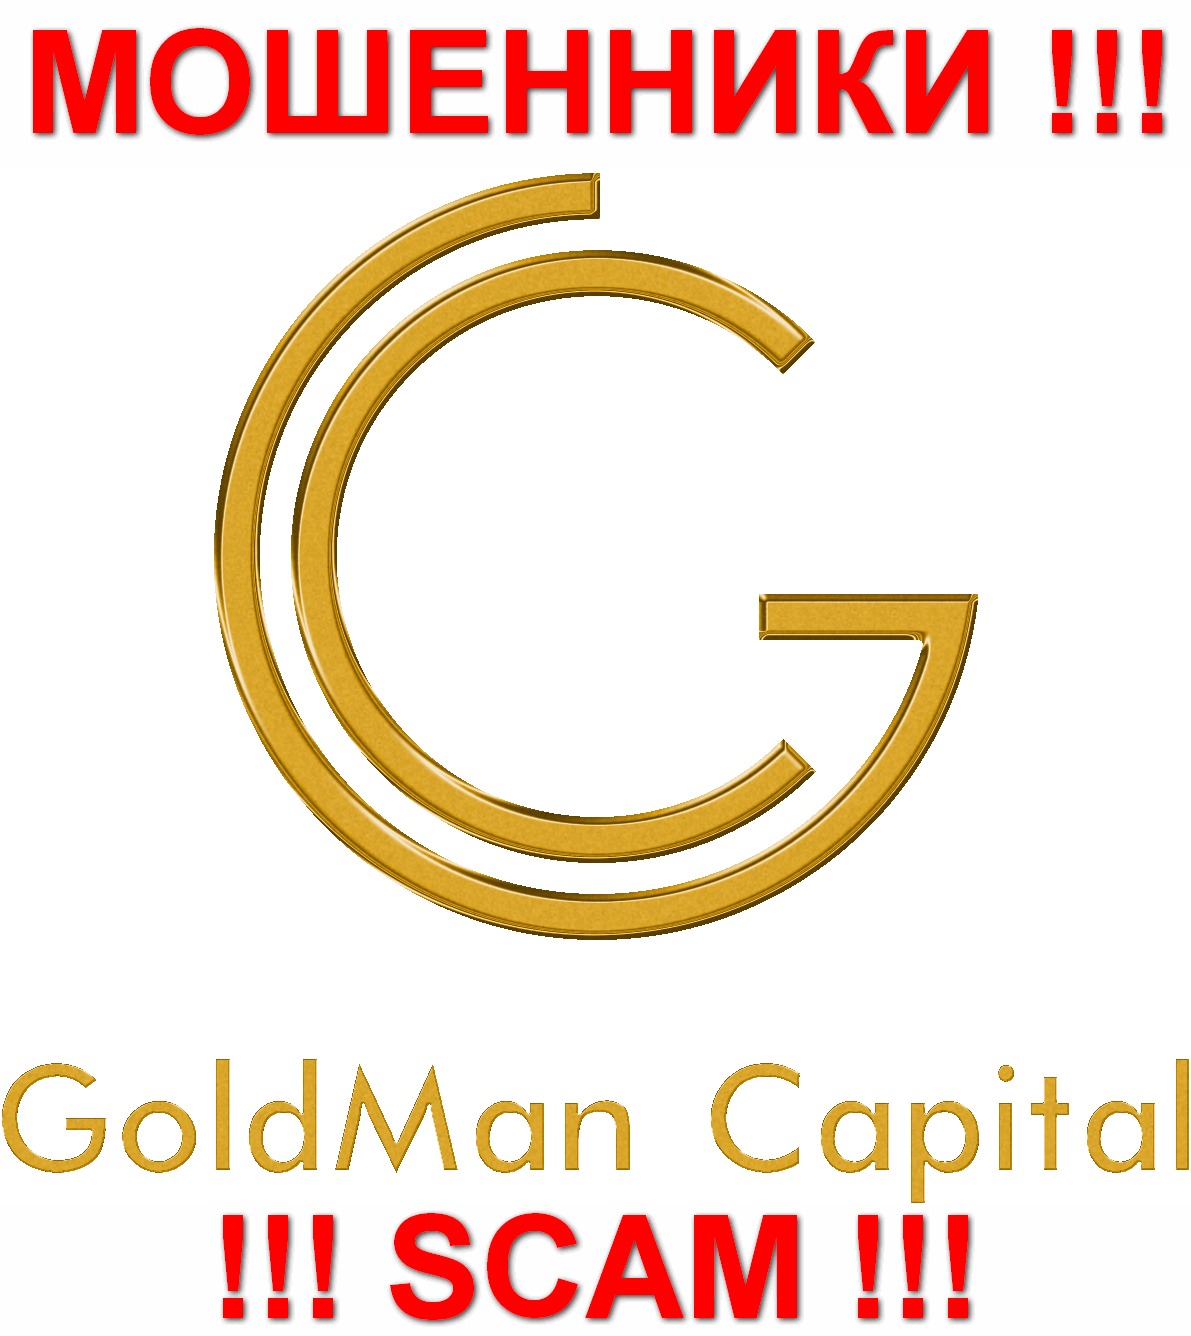 GoldManCapital Ru - МОШЕННИКИ !!! SCAM !!!